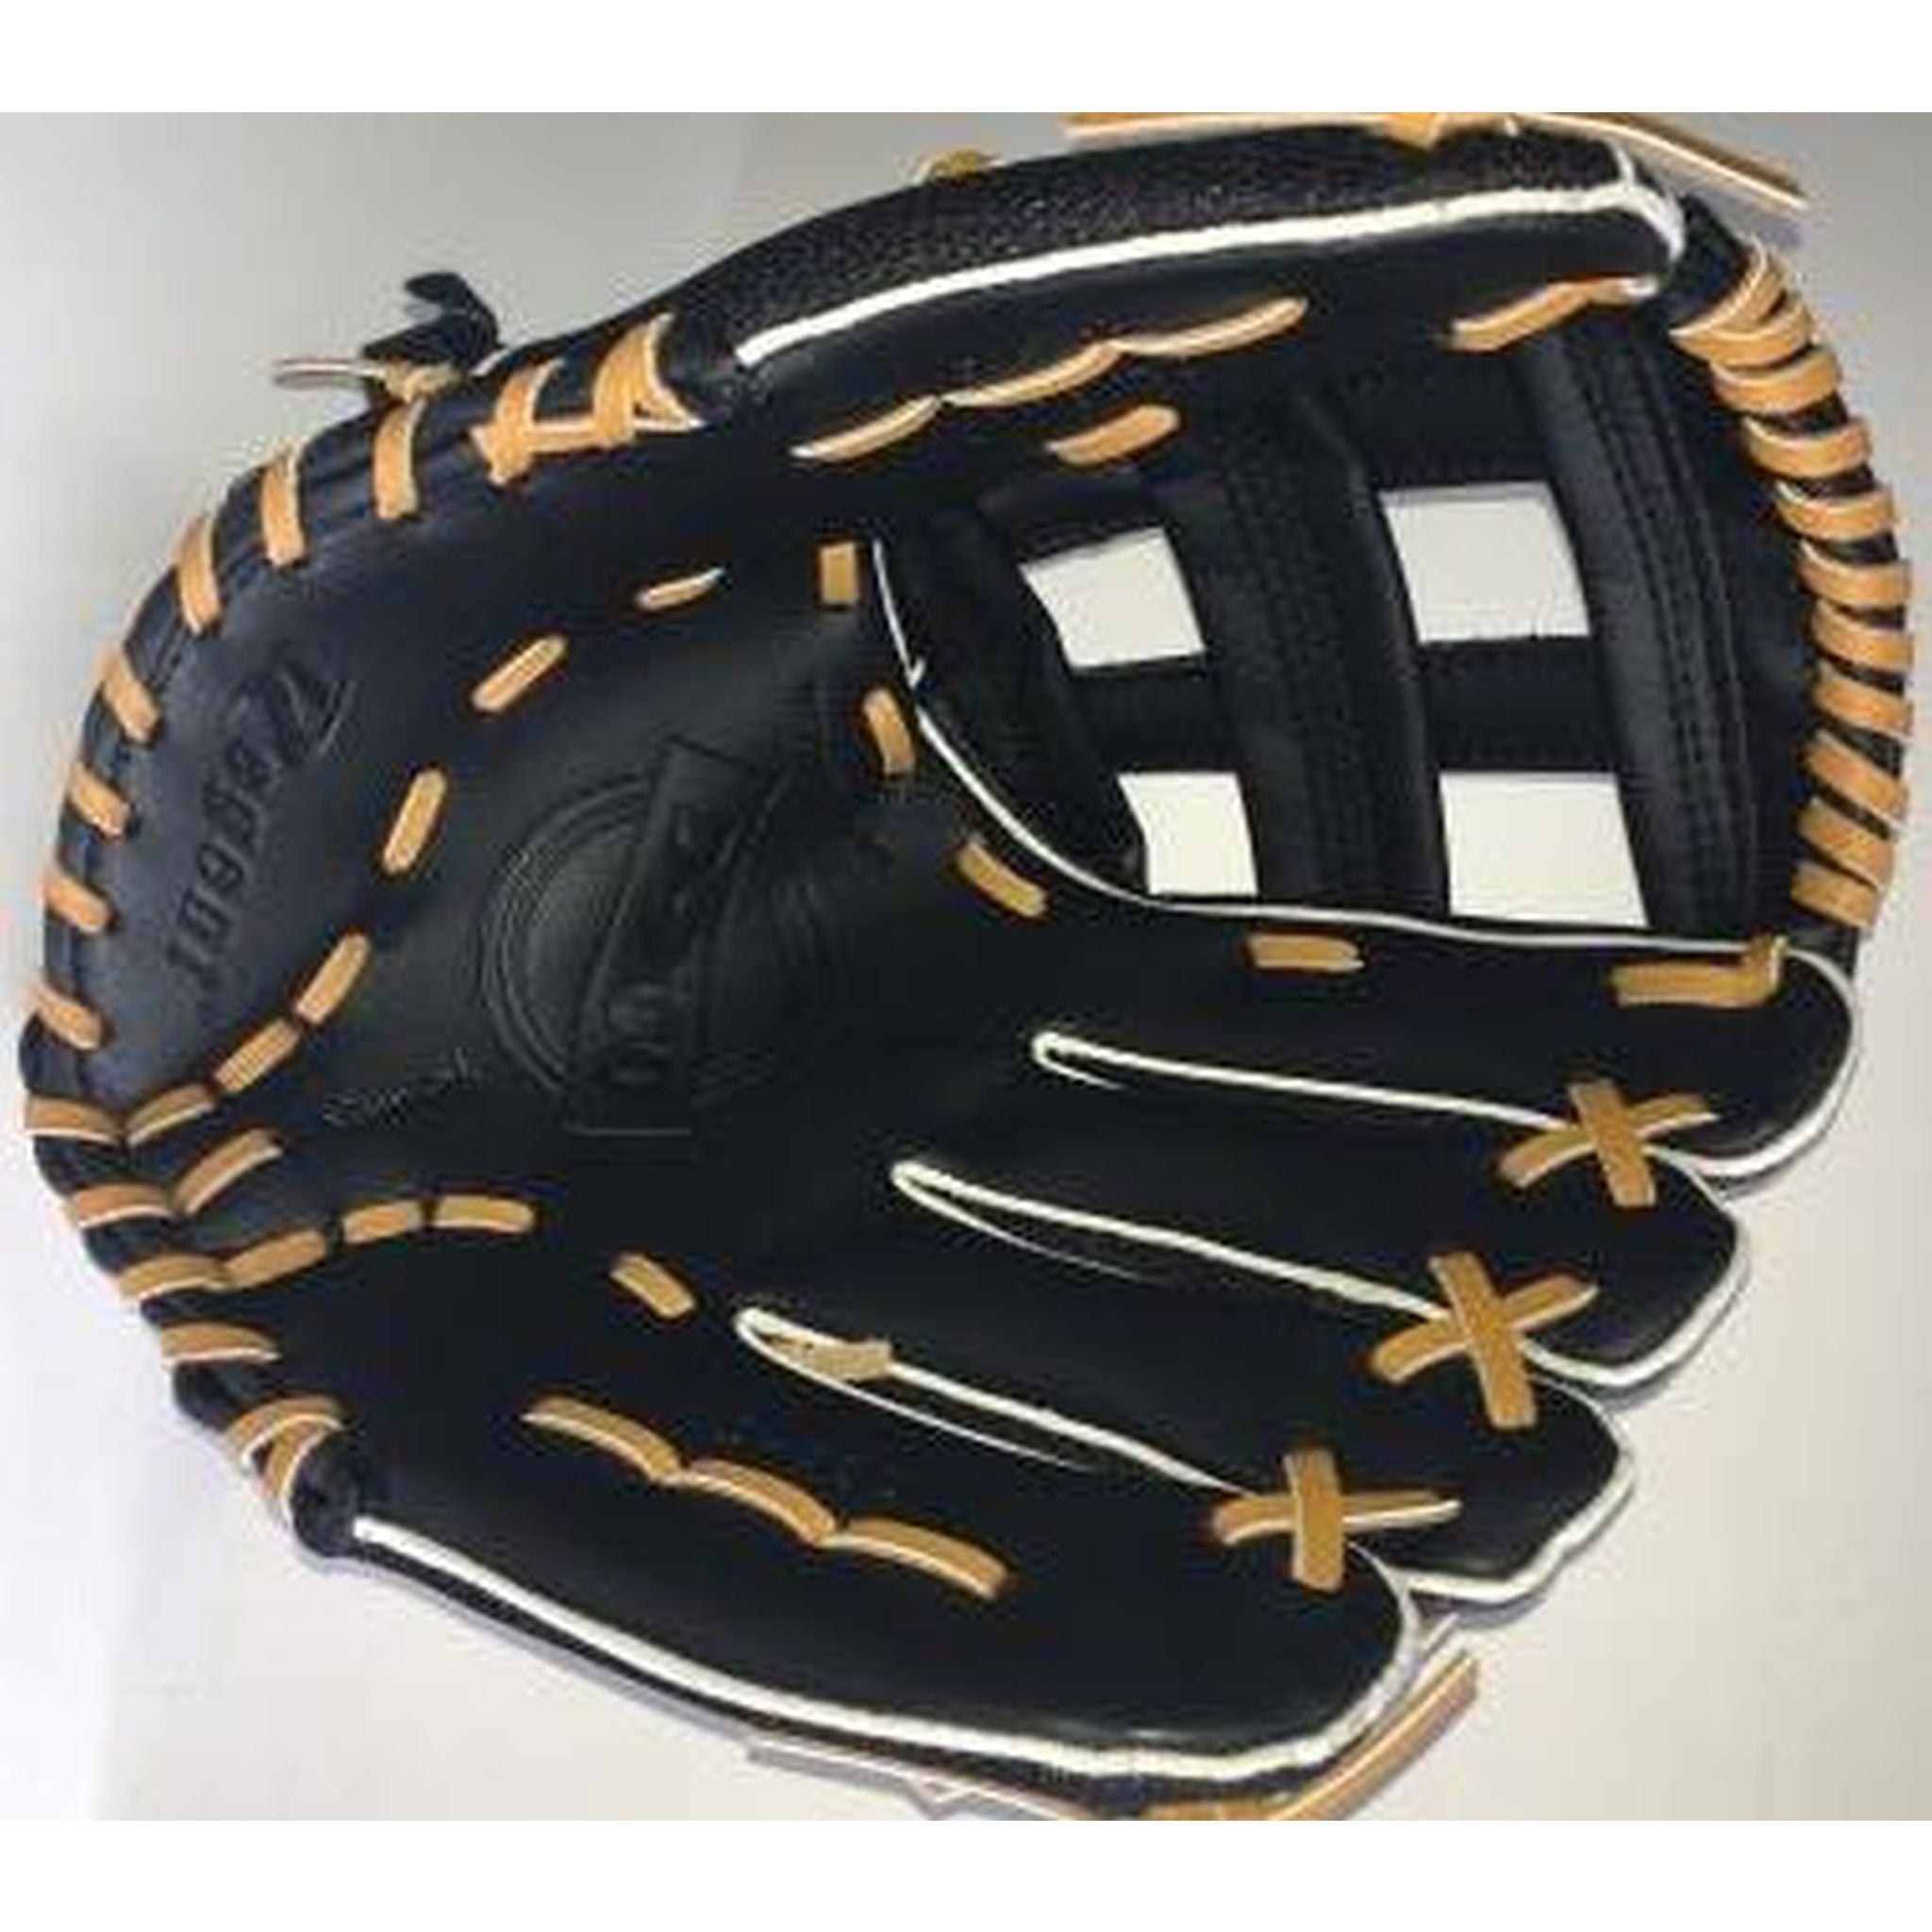 Regent D700 13-inch Baseball/Softball Glove